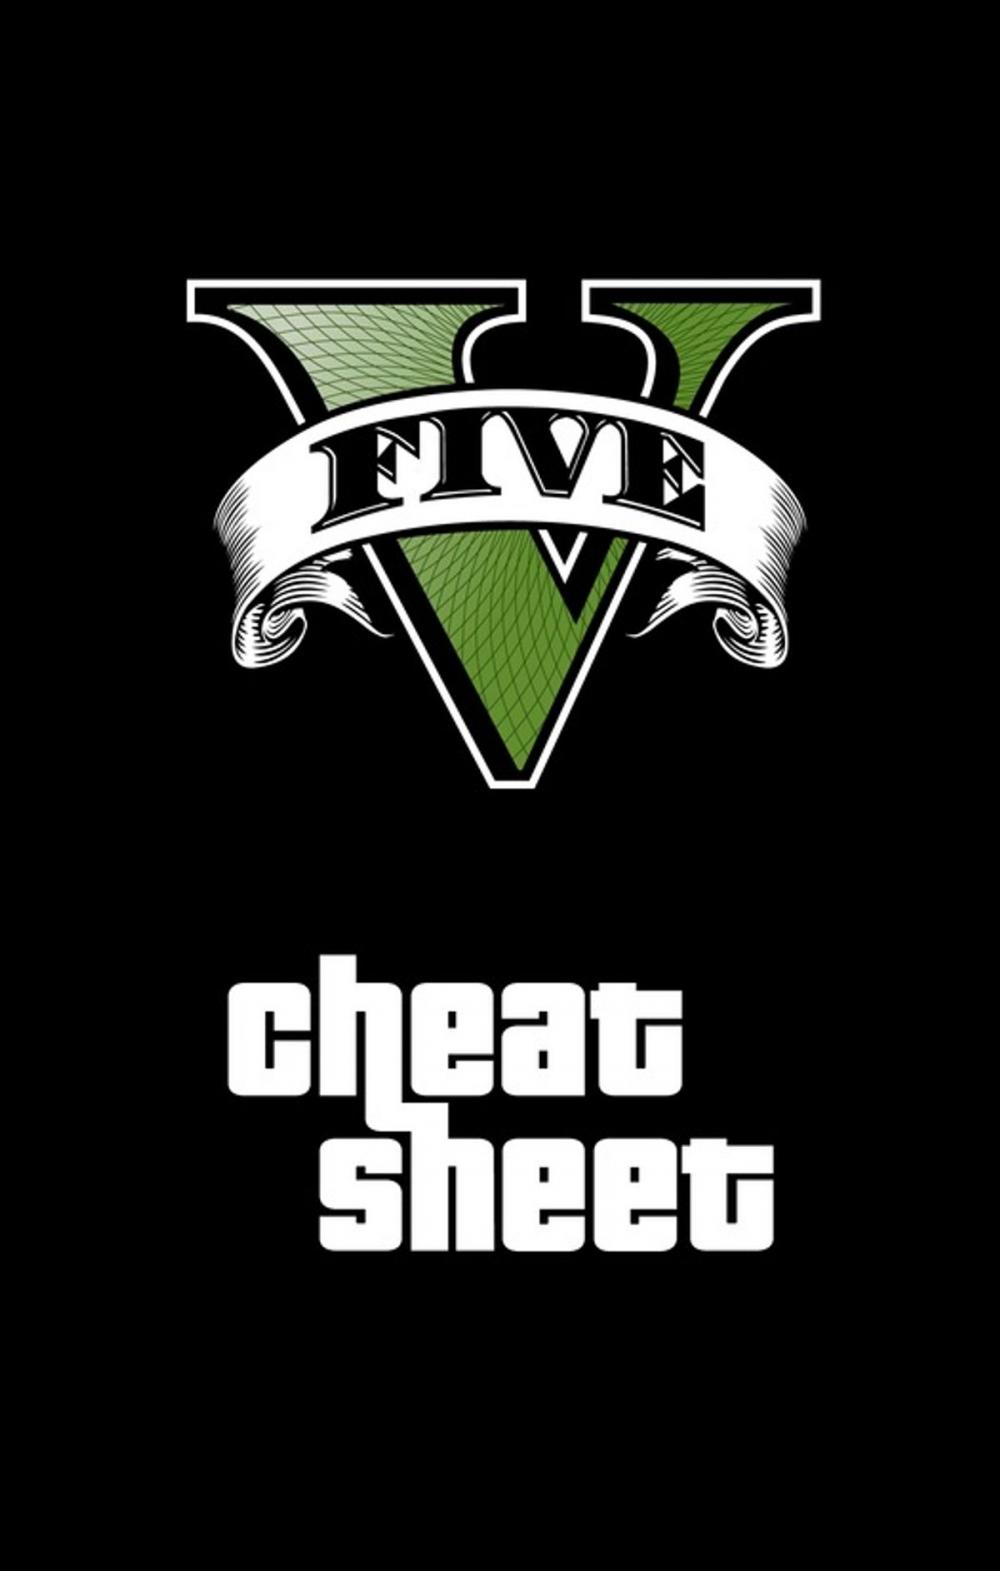 Big bigCover of GTA V Cheat Sheet